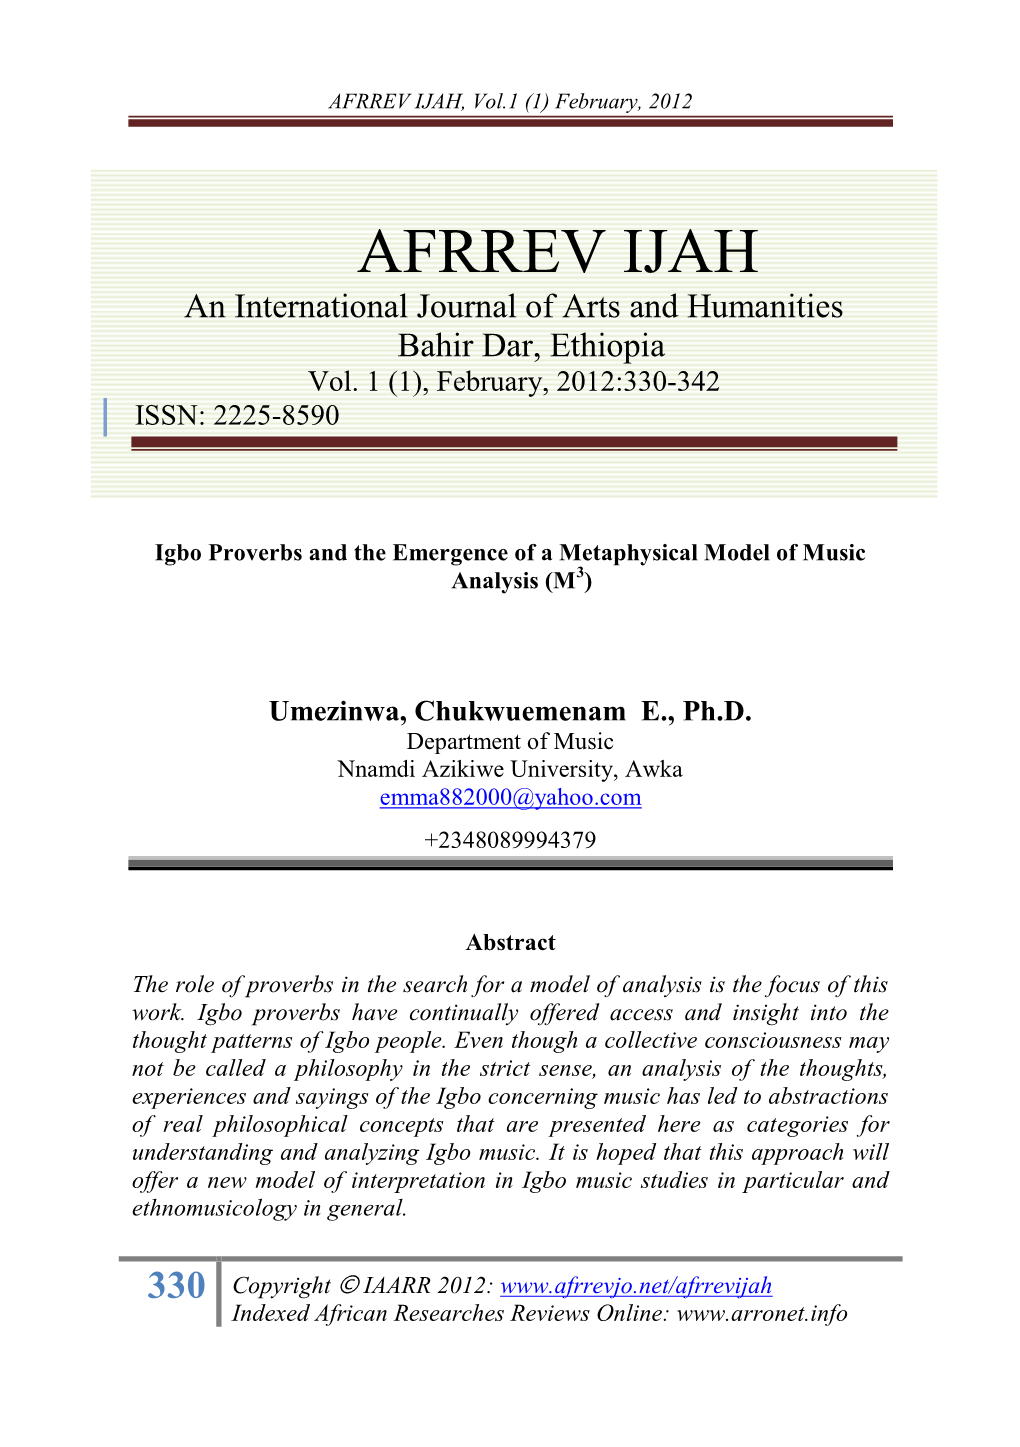 AFRREV IJAH, Vol.1 (1) Feb., 2012